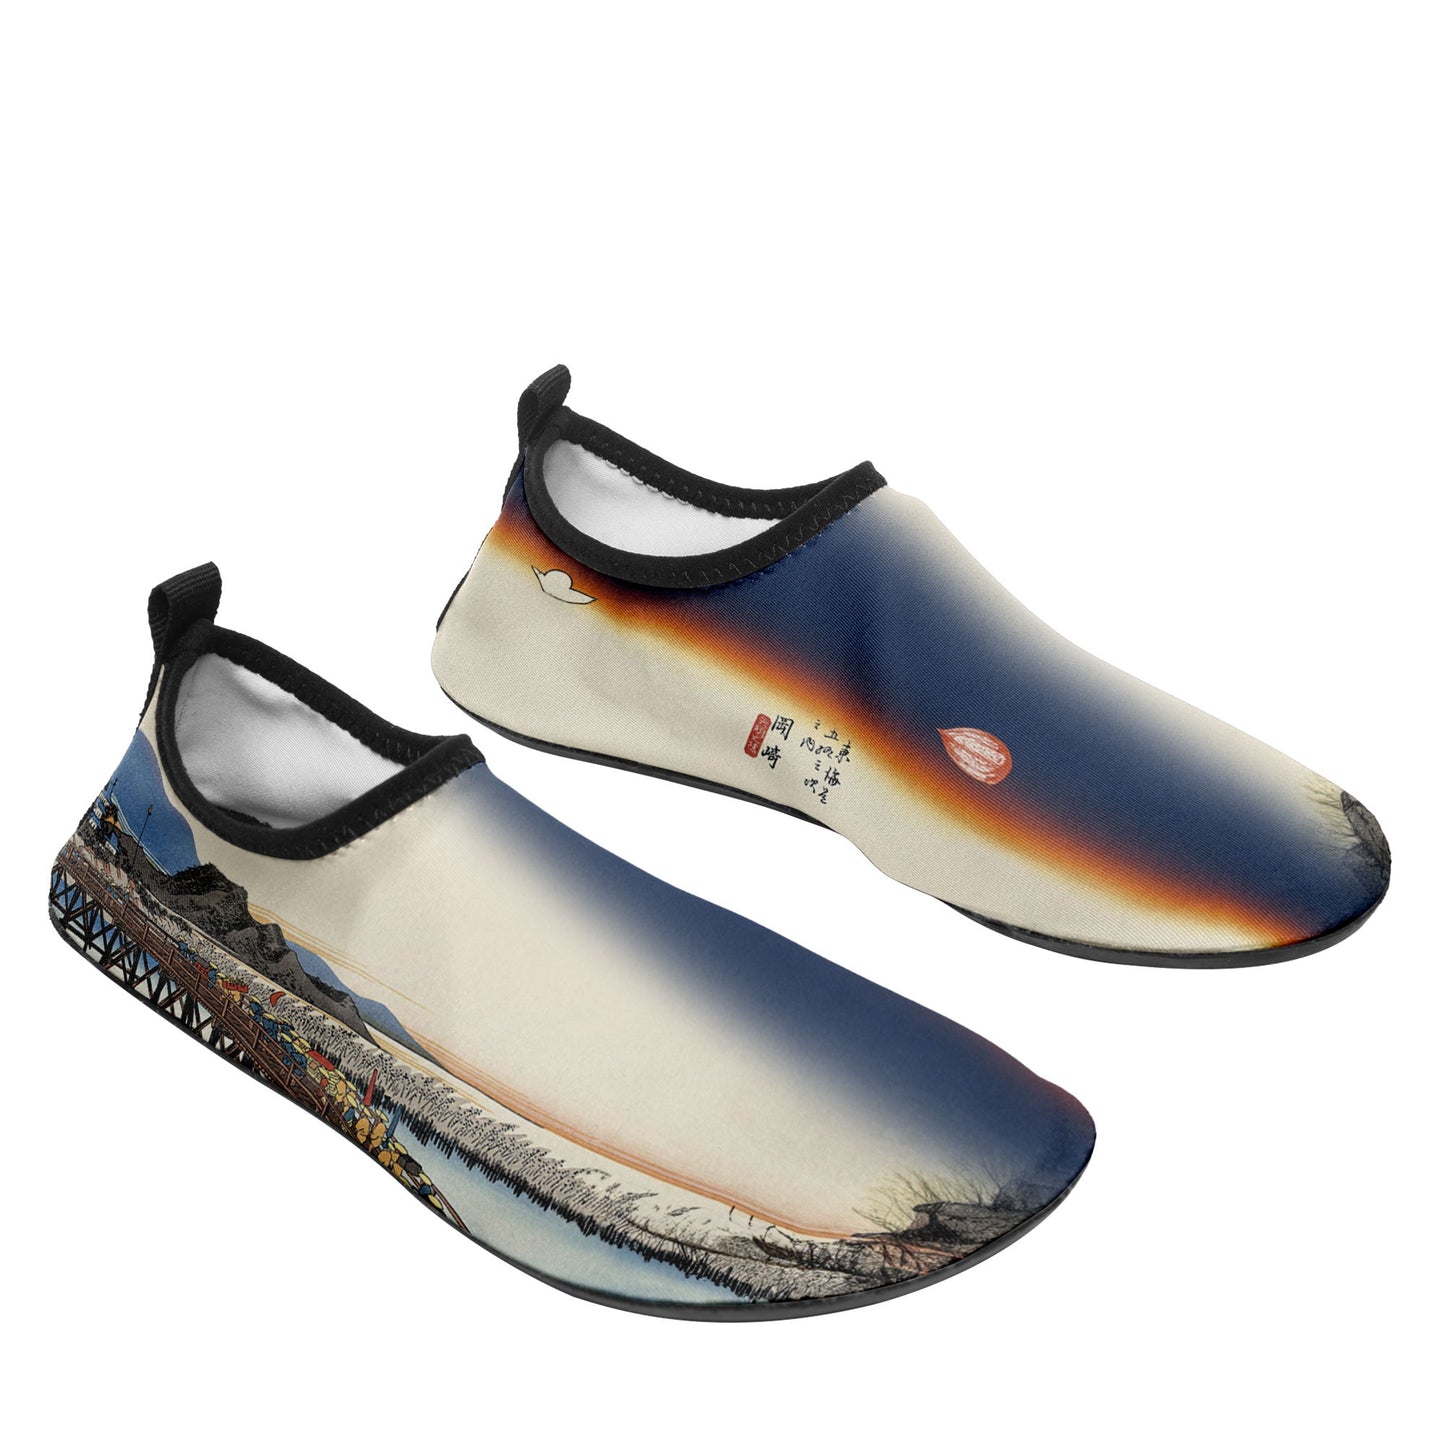 Customized Printed Aqua Shoes 1902: Ukiyo-e the Fifty Three Stations of the Tokaido Okazaki Yahagi No Hashi Beach Wading Shoes 3